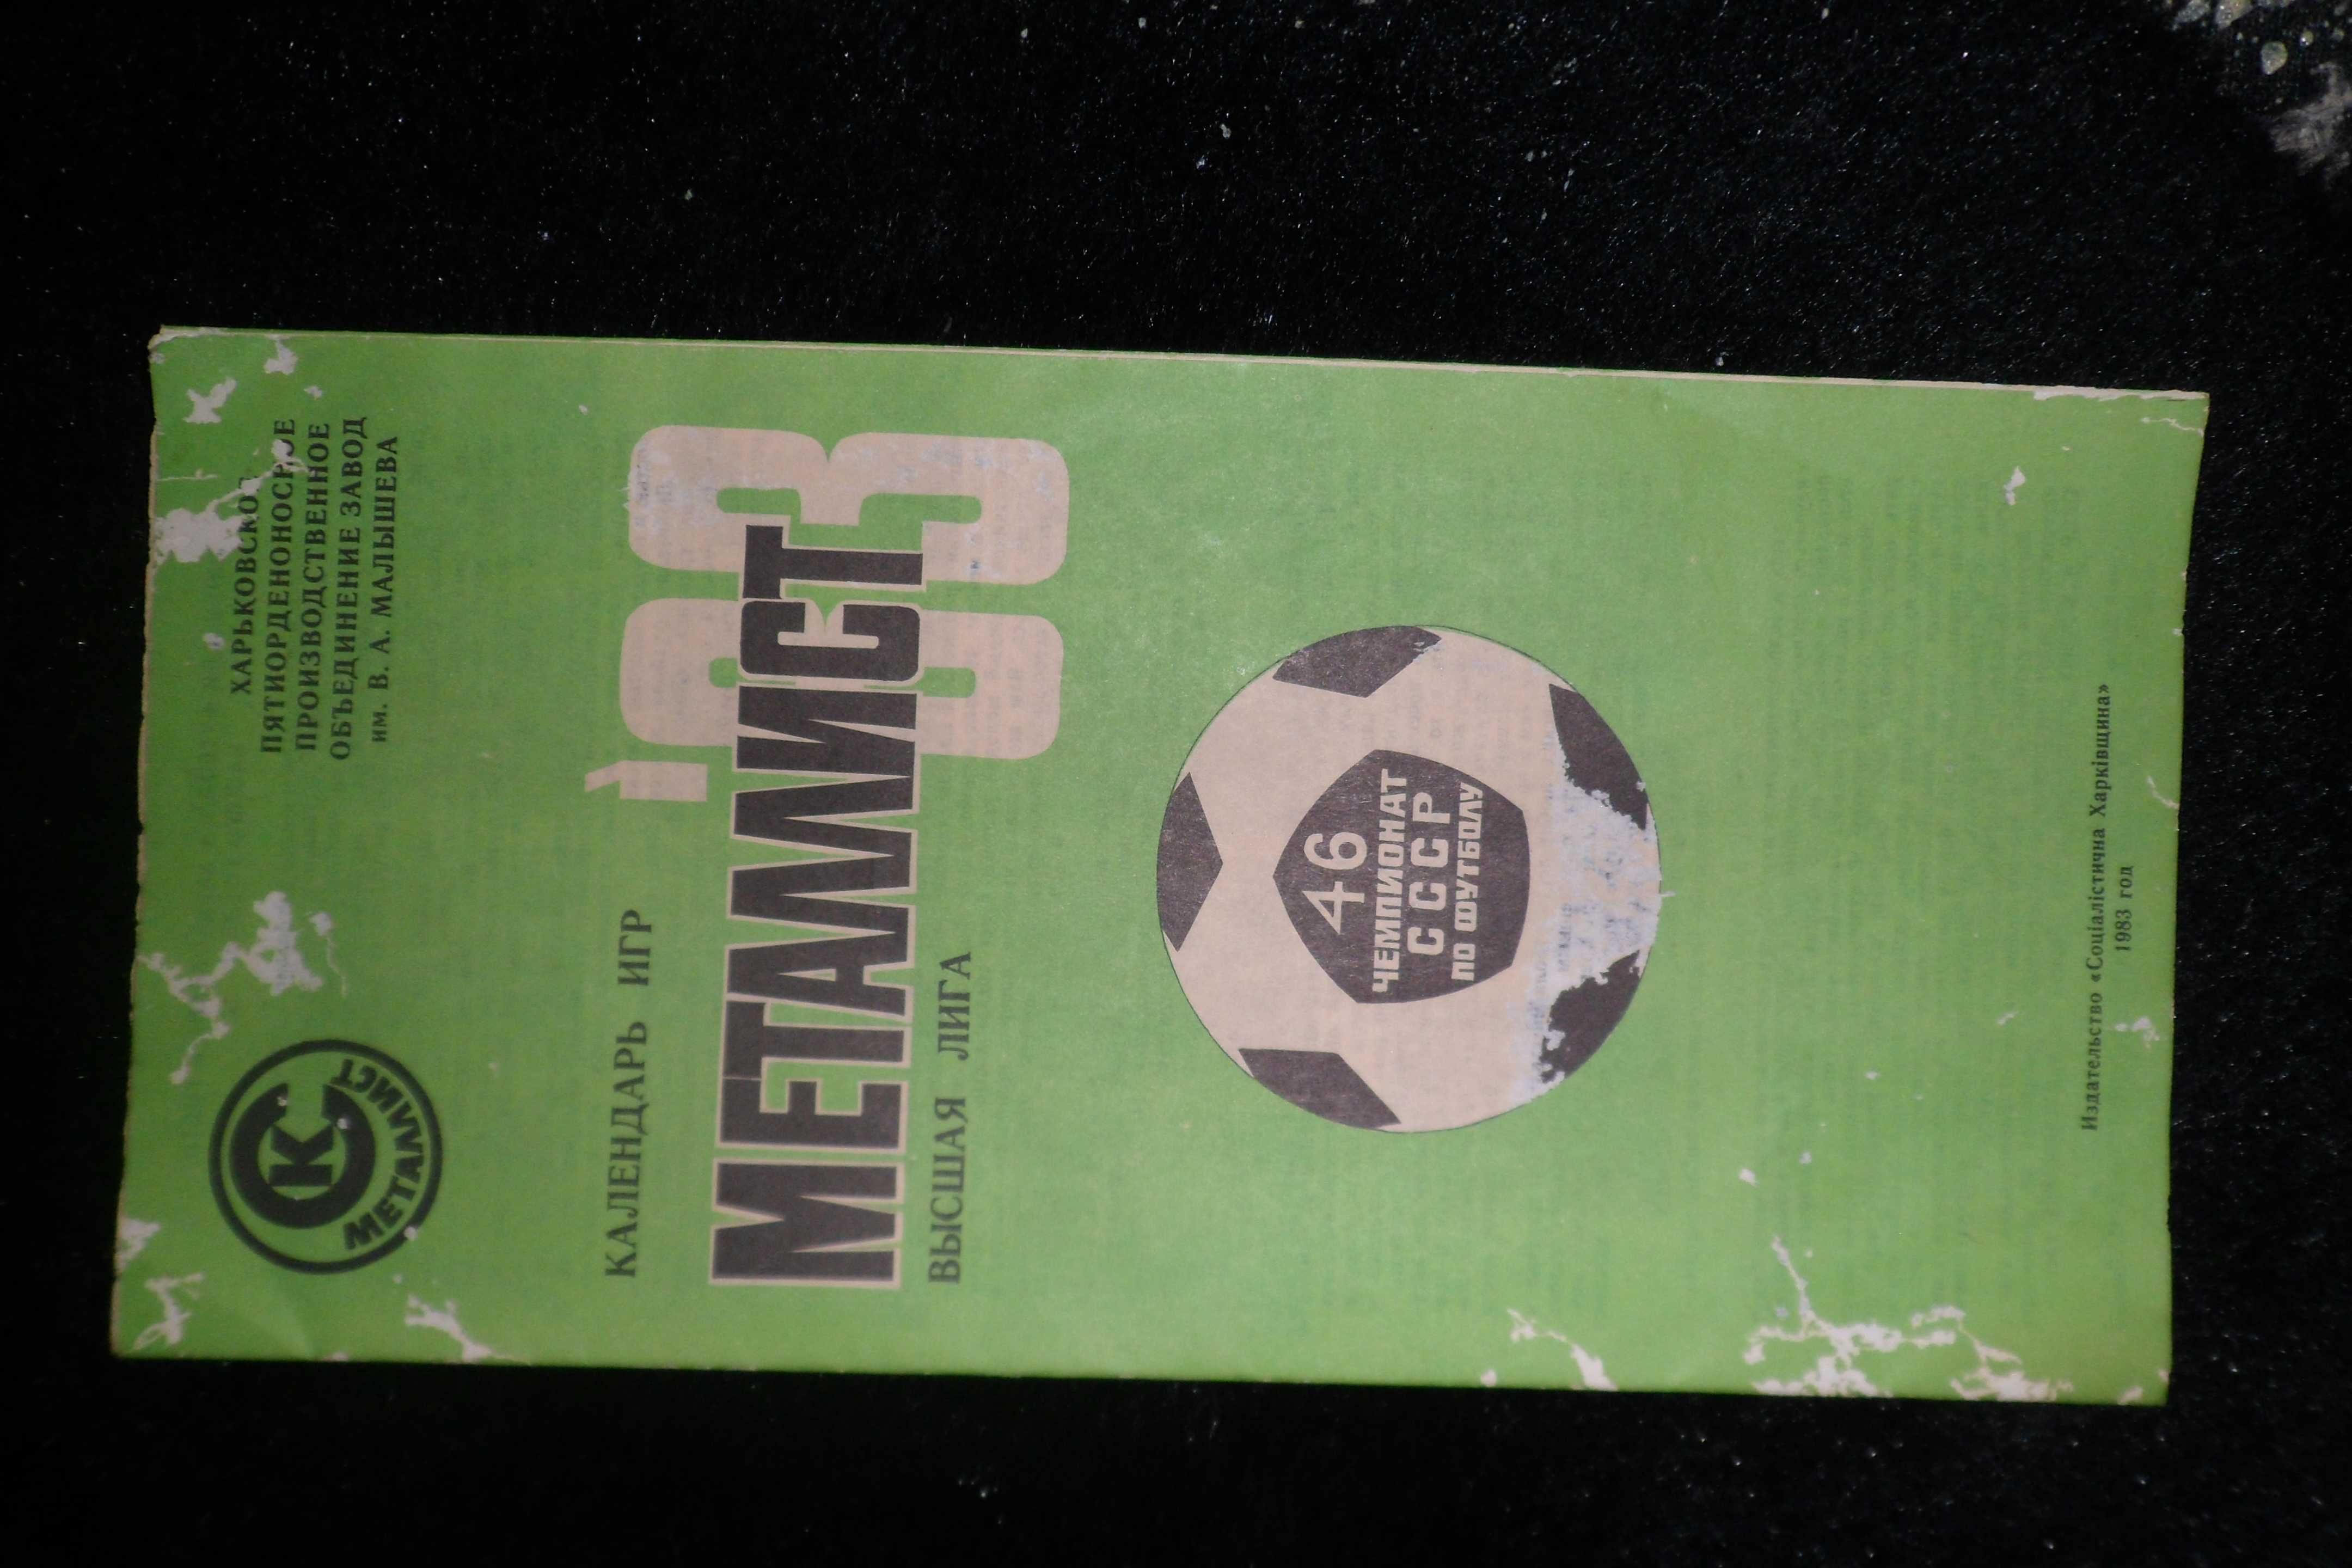 Книги и газеты про футбол